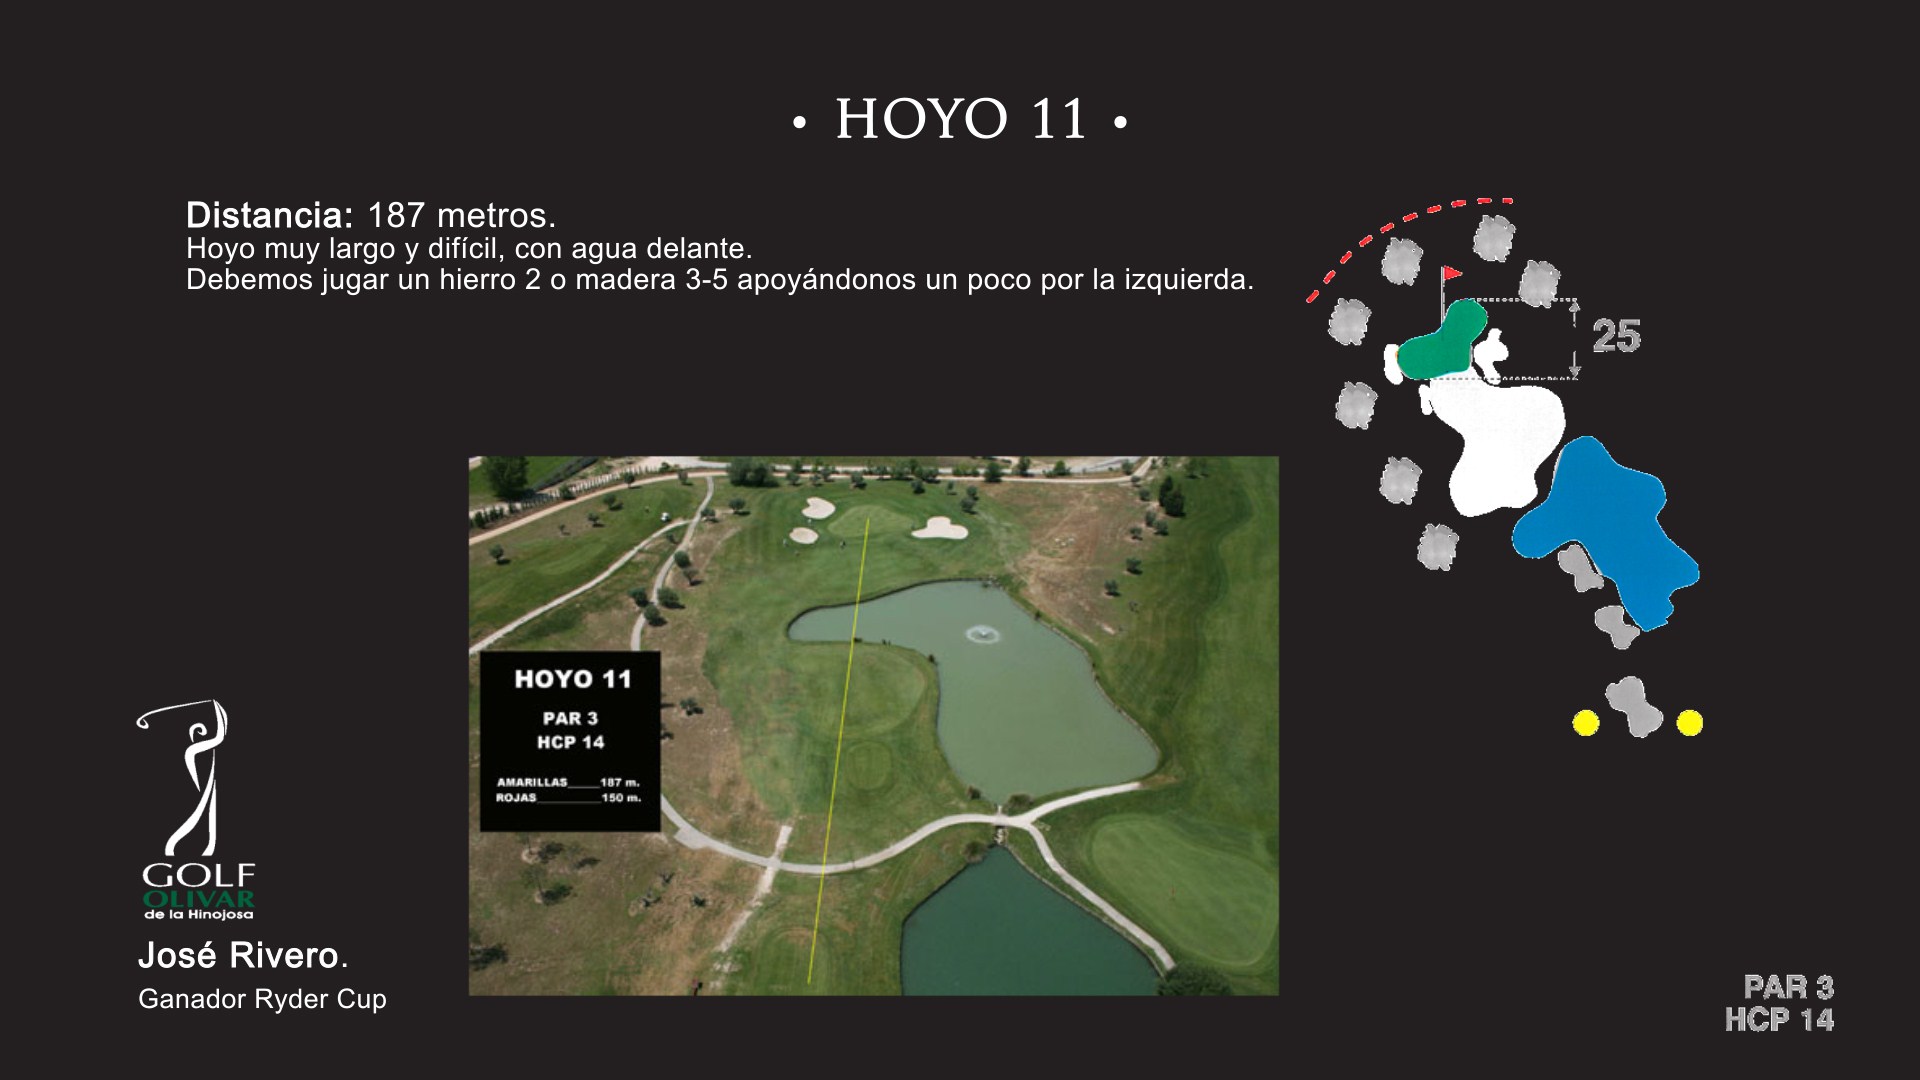 Hoyo 11 Olivar de la Hinojosa